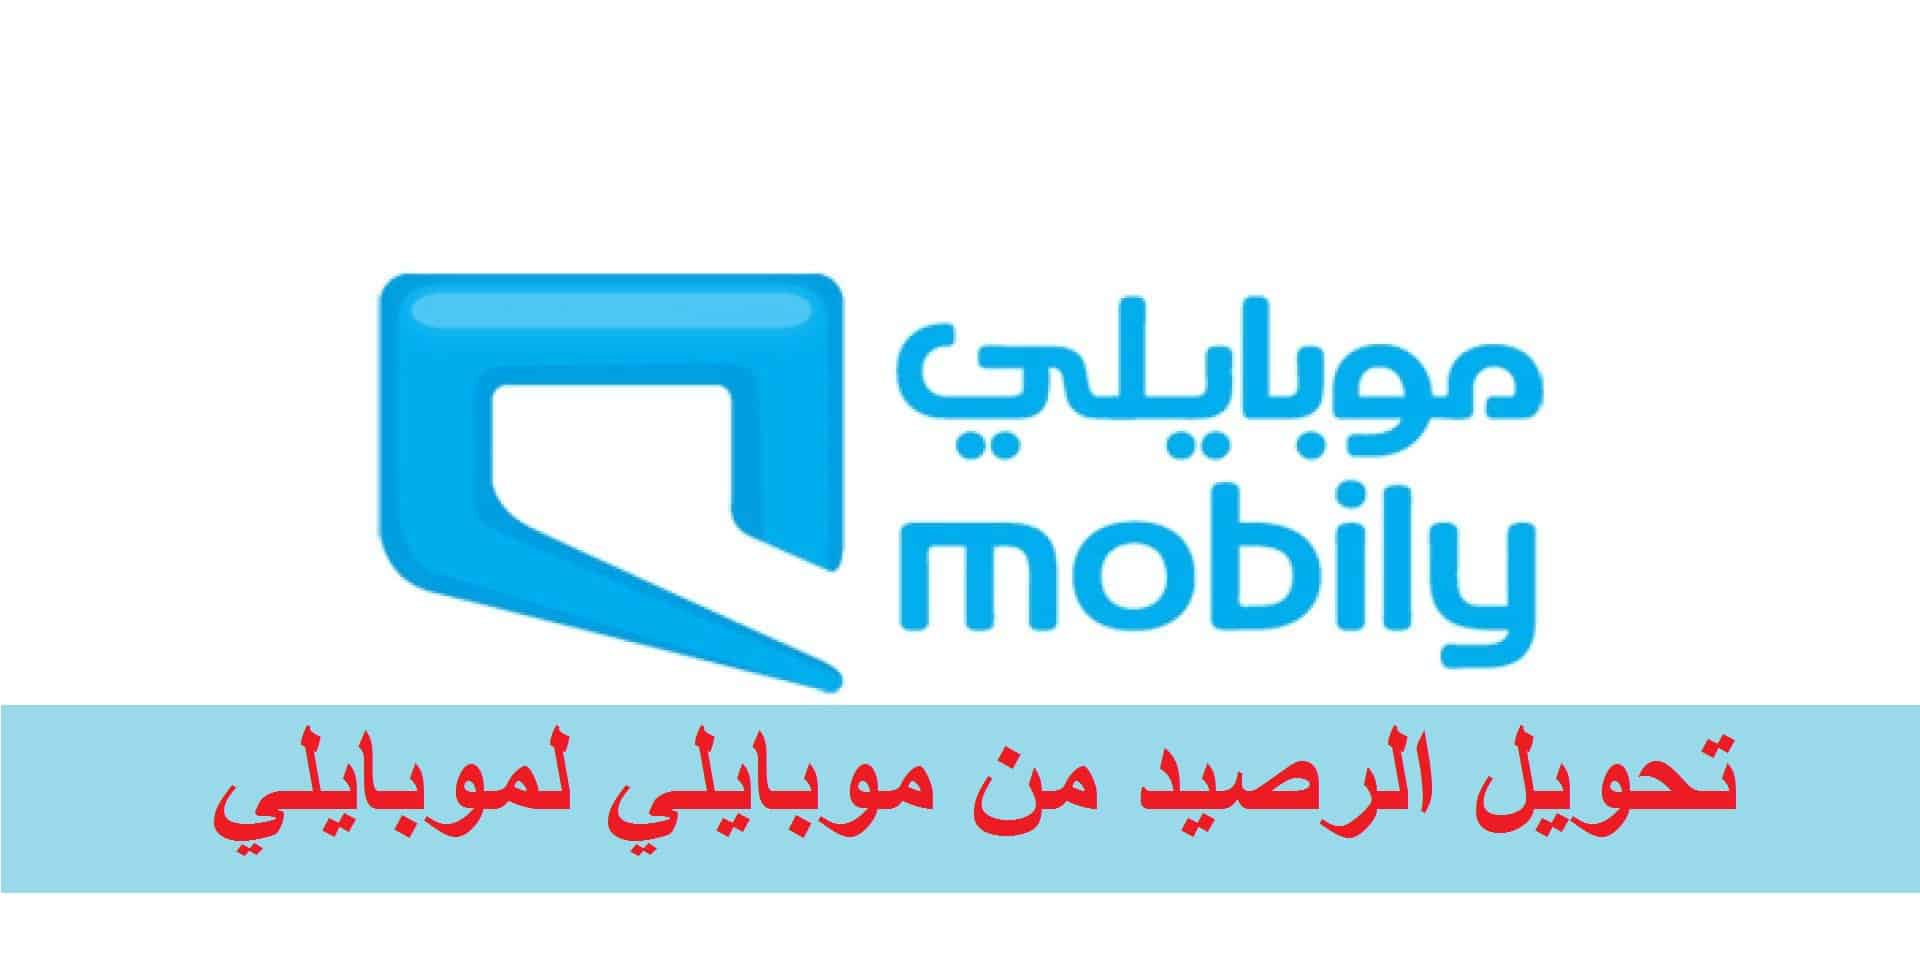 خطوات تحويل الرصيد من موبايلي لموبايلي الكترونيا عبر تطبيق mobily في السعودية 1444